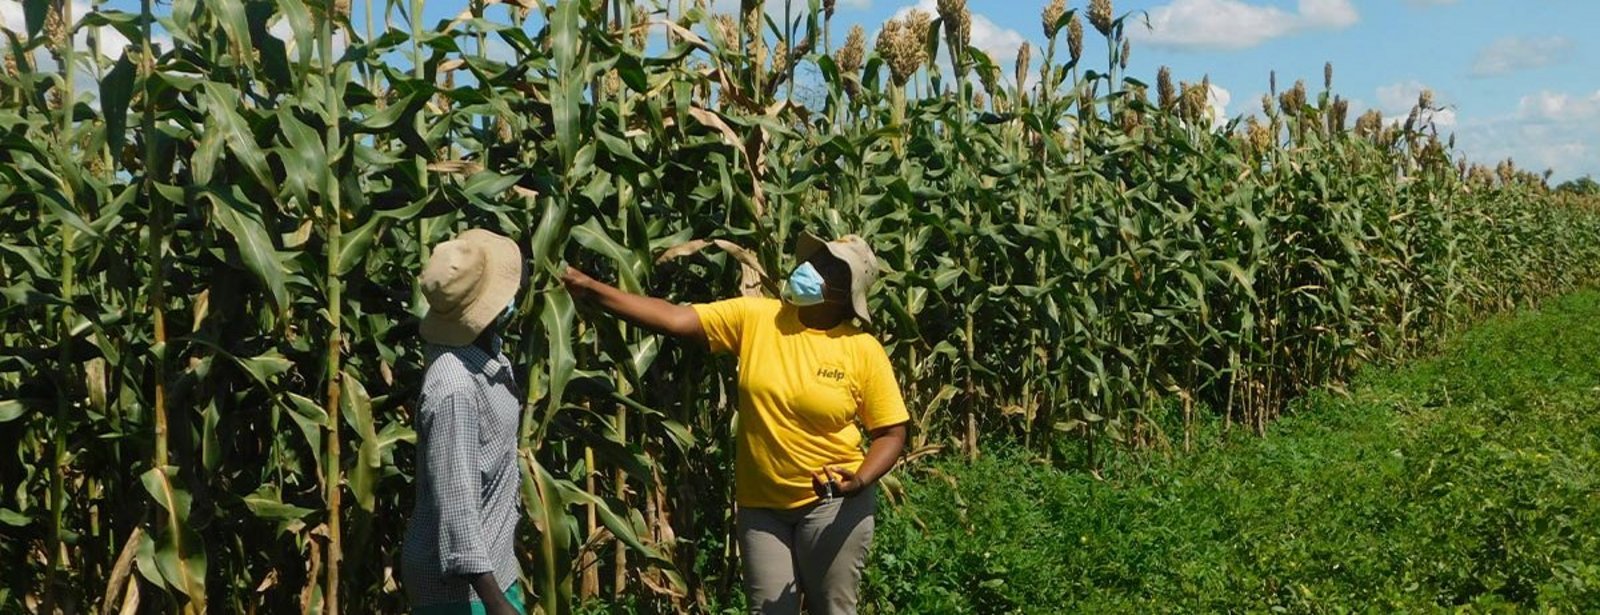 Zwei Frauen vor wachsendem Getreide